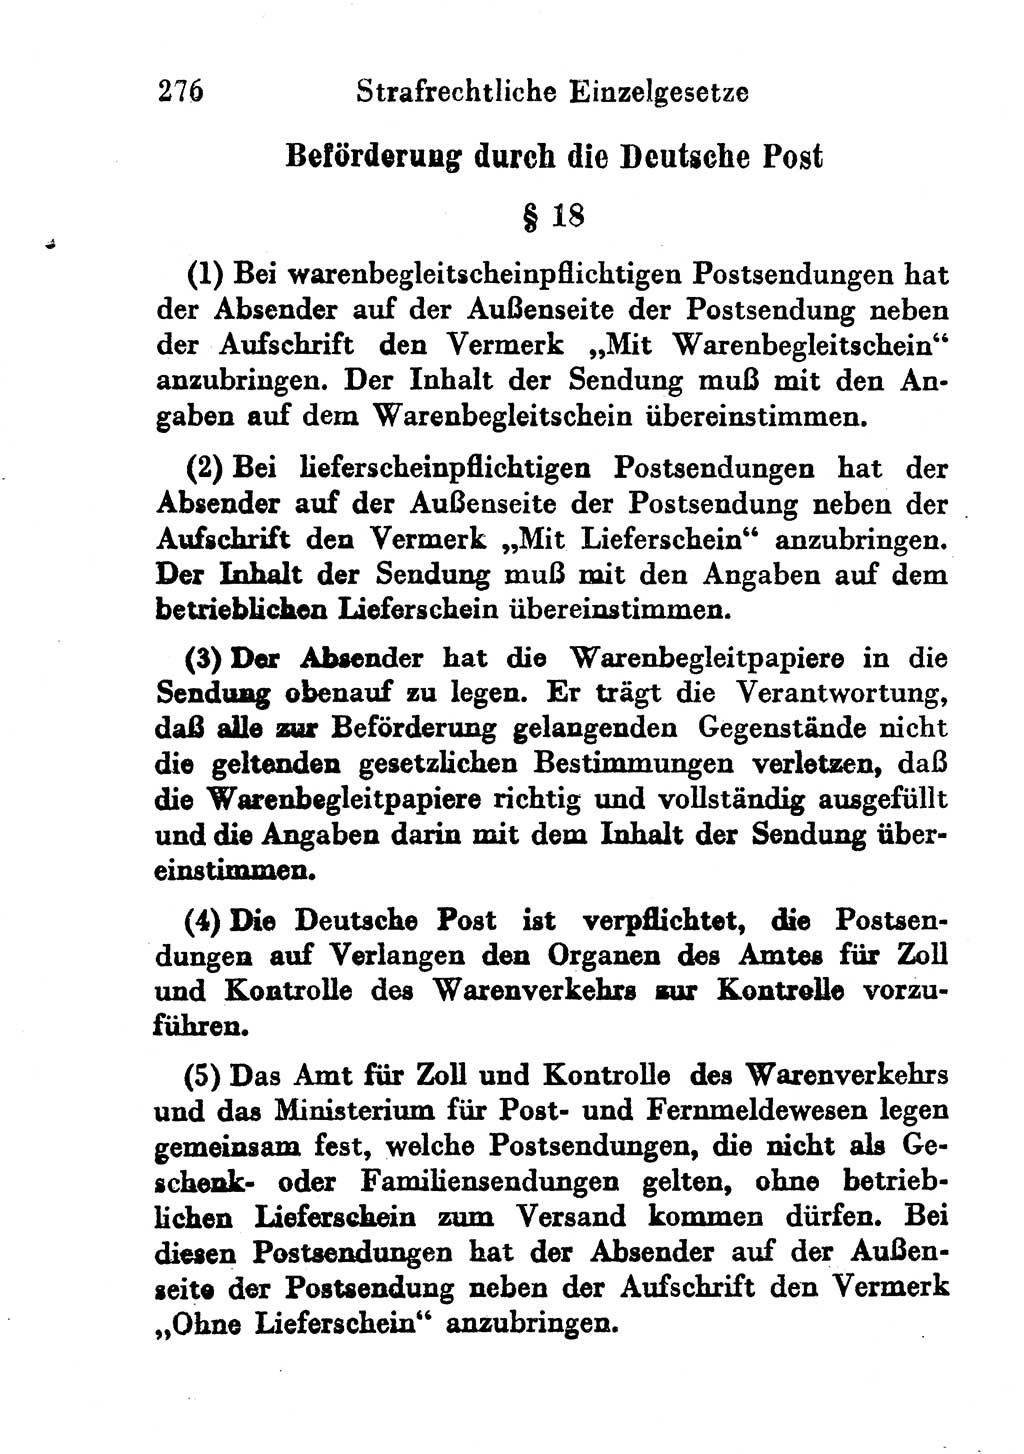 Strafgesetzbuch (StGB) und andere Strafgesetze [Deutsche Demokratische Republik (DDR)] 1956, Seite 276 (StGB Strafges. DDR 1956, S. 276)